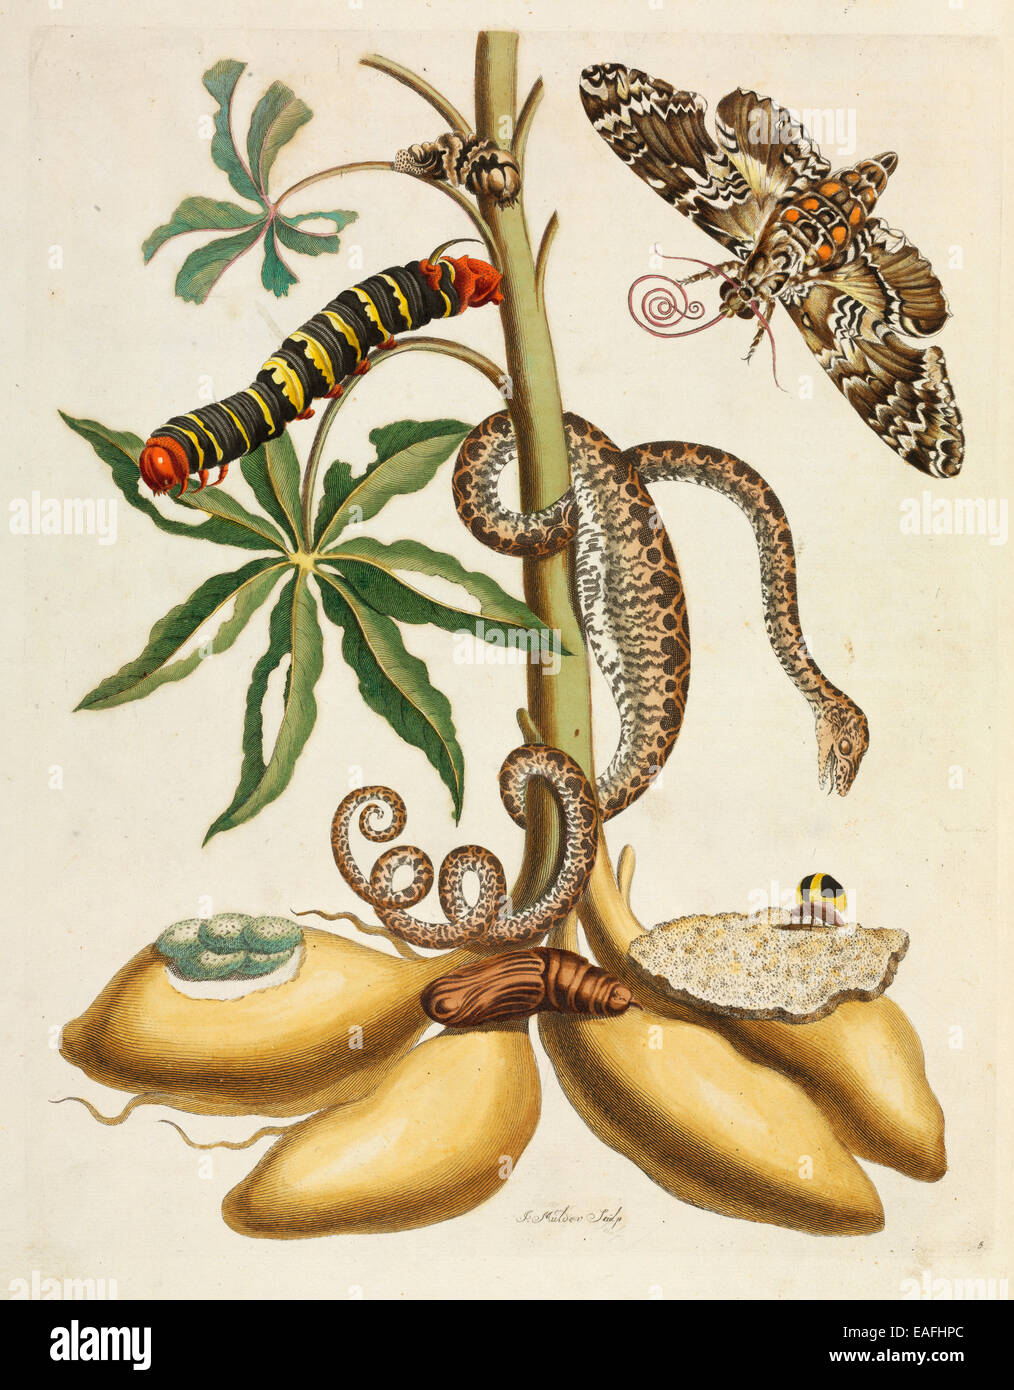 Manihot Esculenta, Maniok-Pflanze mit Pseudosphinx Tetrio, Sphinx Motte Erwachsene und Caterpillar und Tree boa Stockfoto